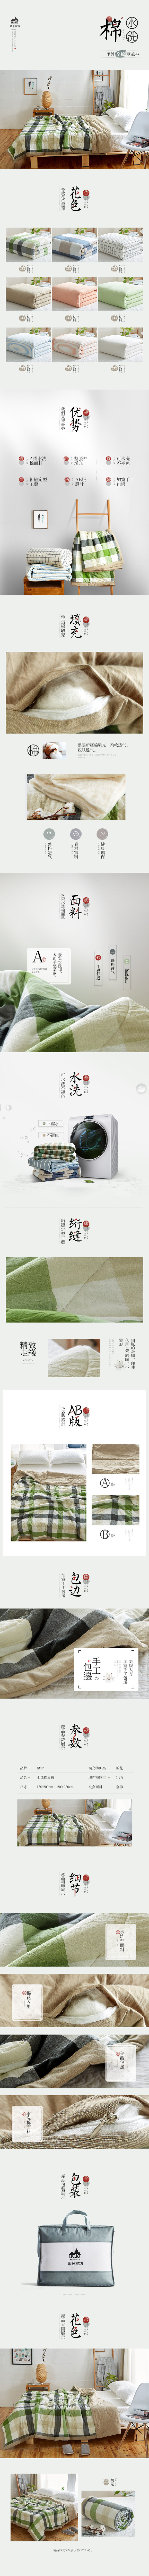 淘宝美工芒果酱中国风 被子 夏季 清新详情设计作品